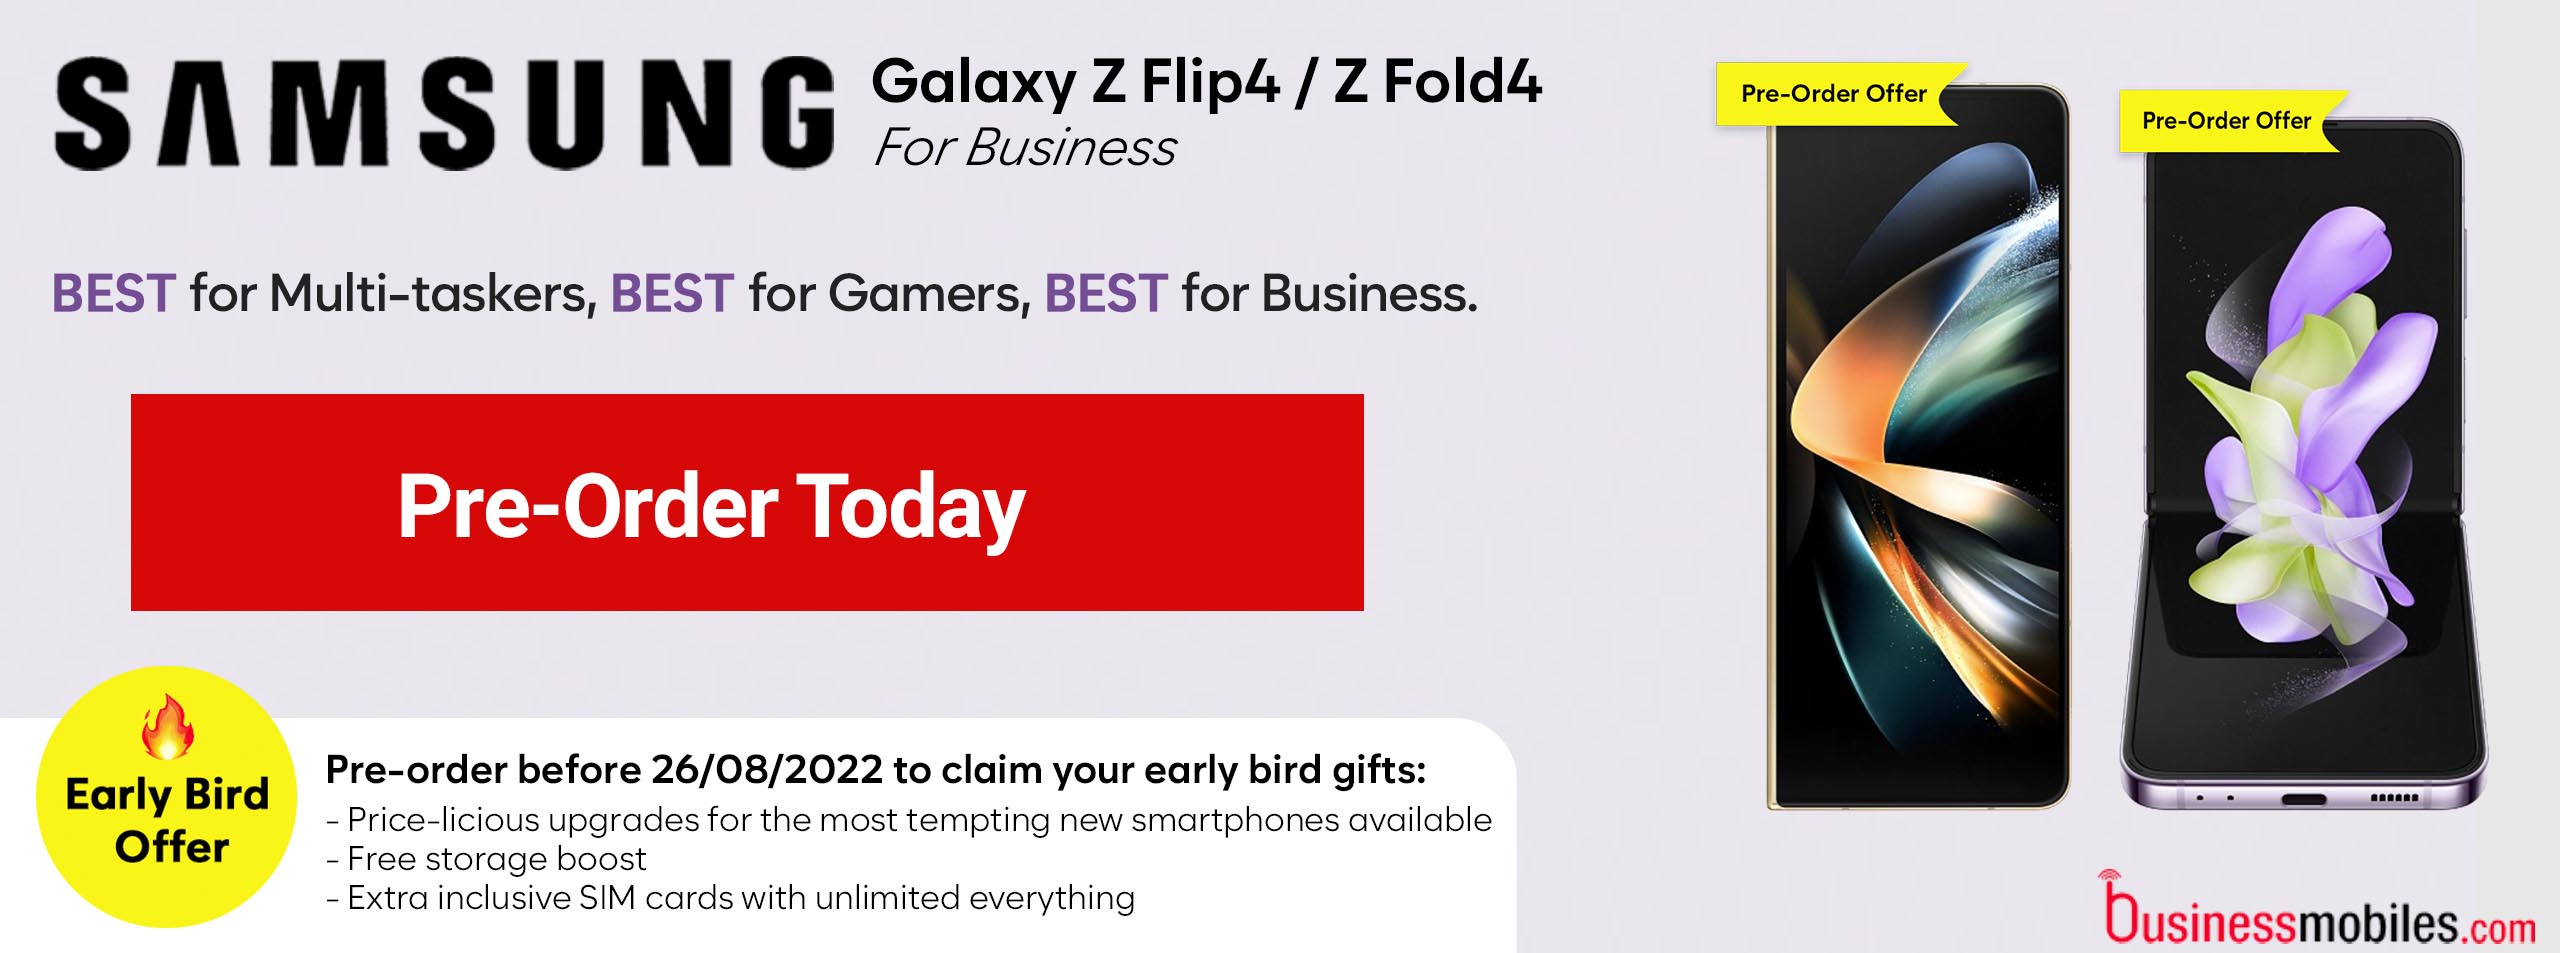 Samsung-galaxy-z-flip4-fold4-pre-order